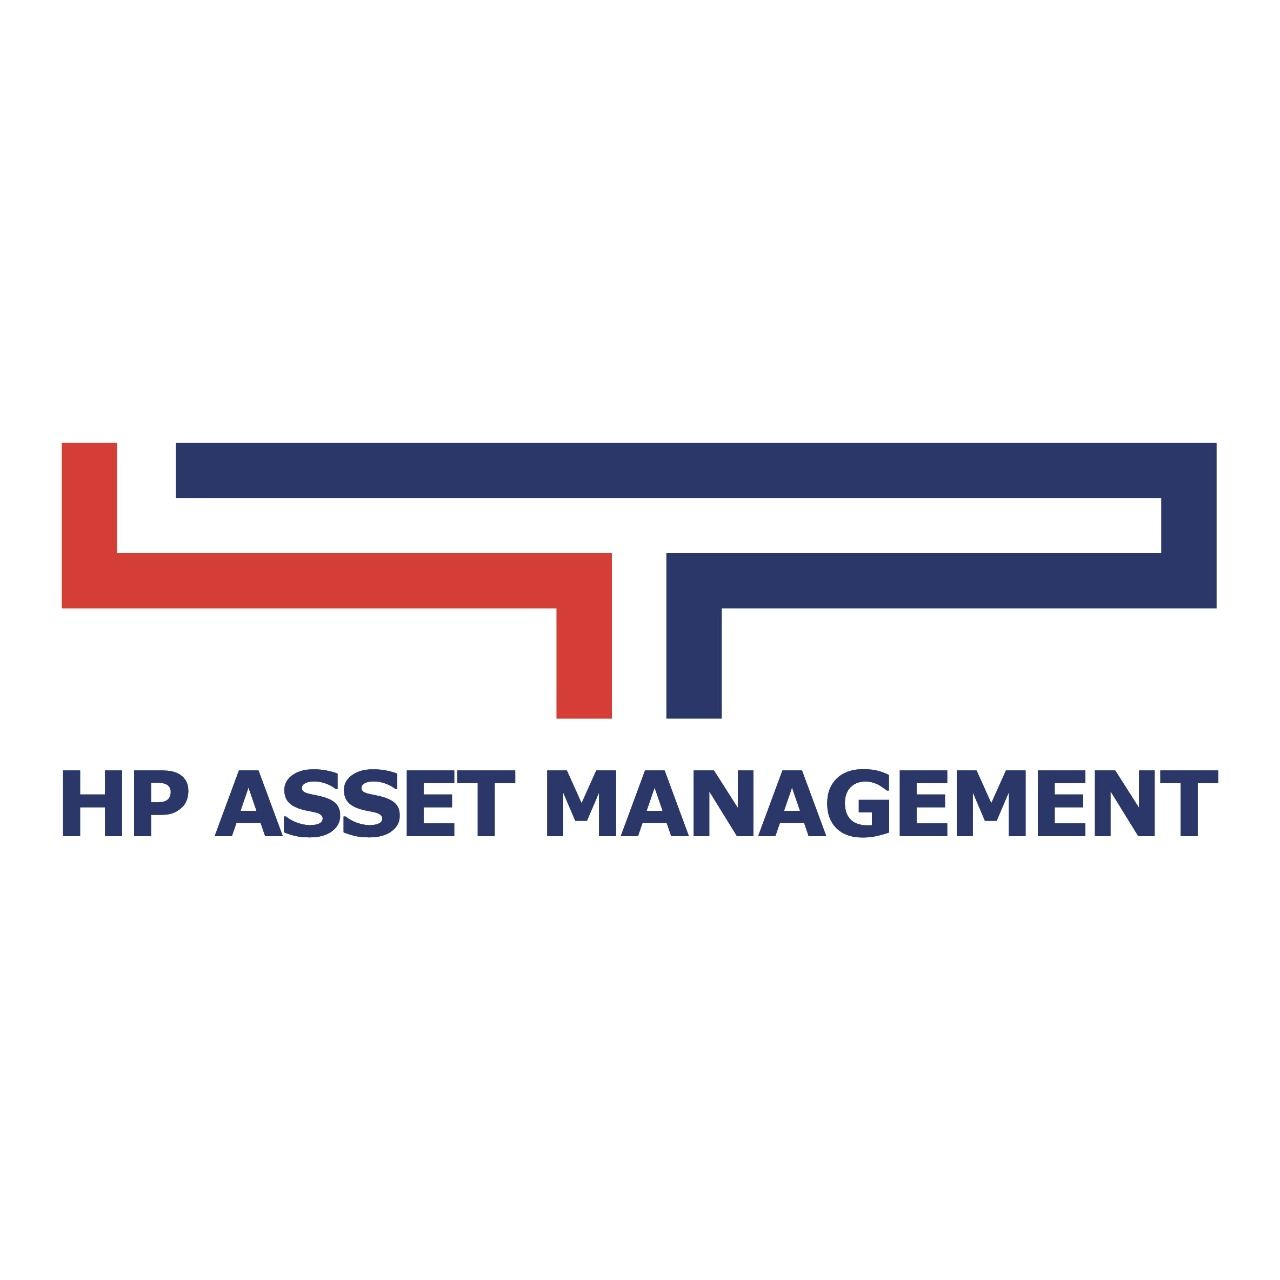 HP ASSET MANAGEMENT (HPAM)